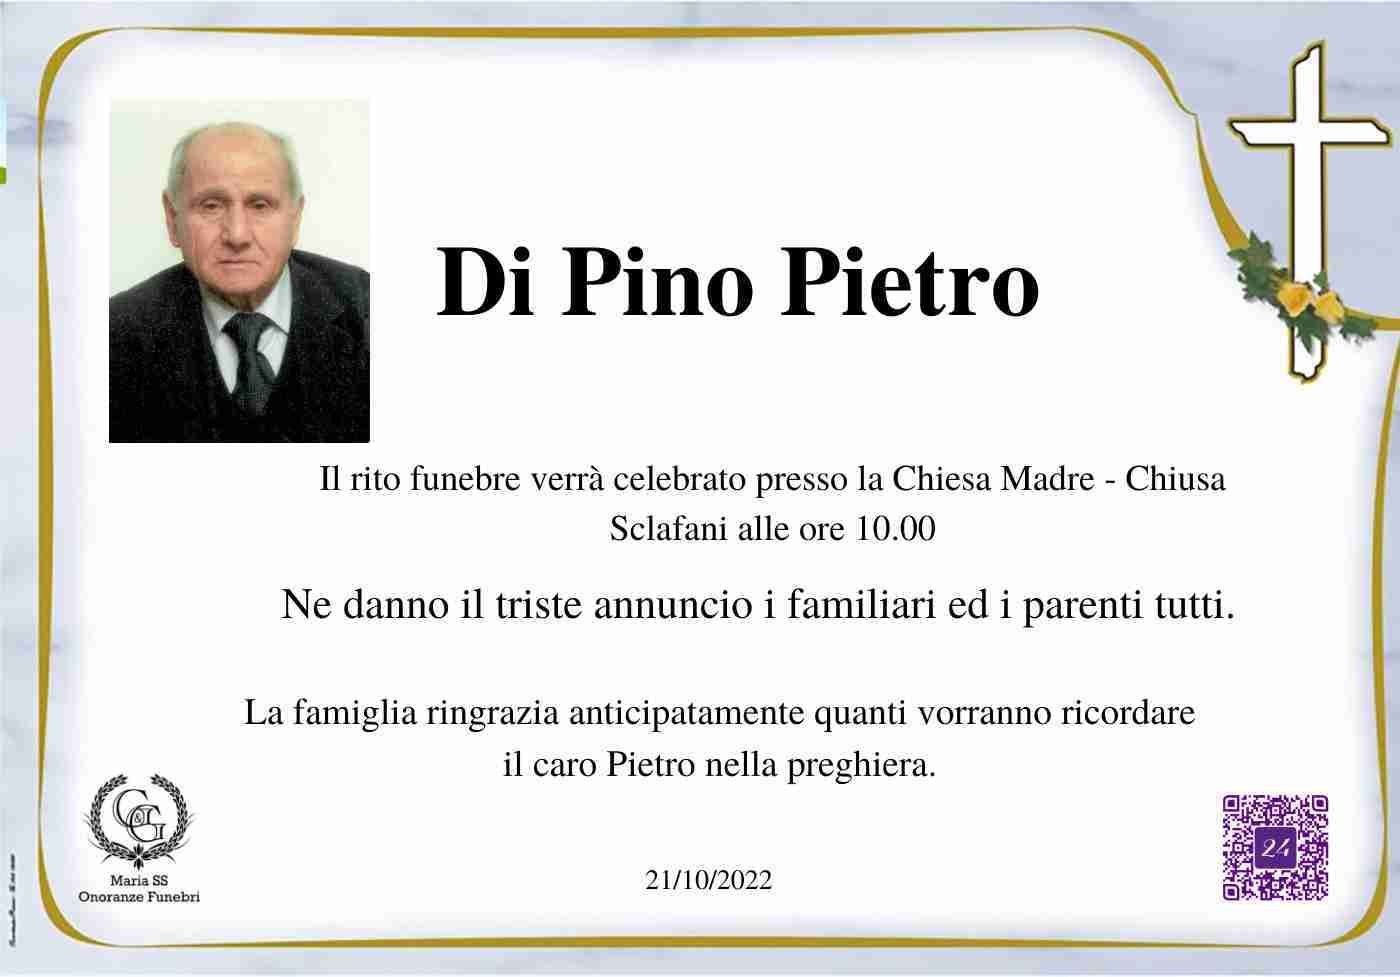 Di Pino Pietro